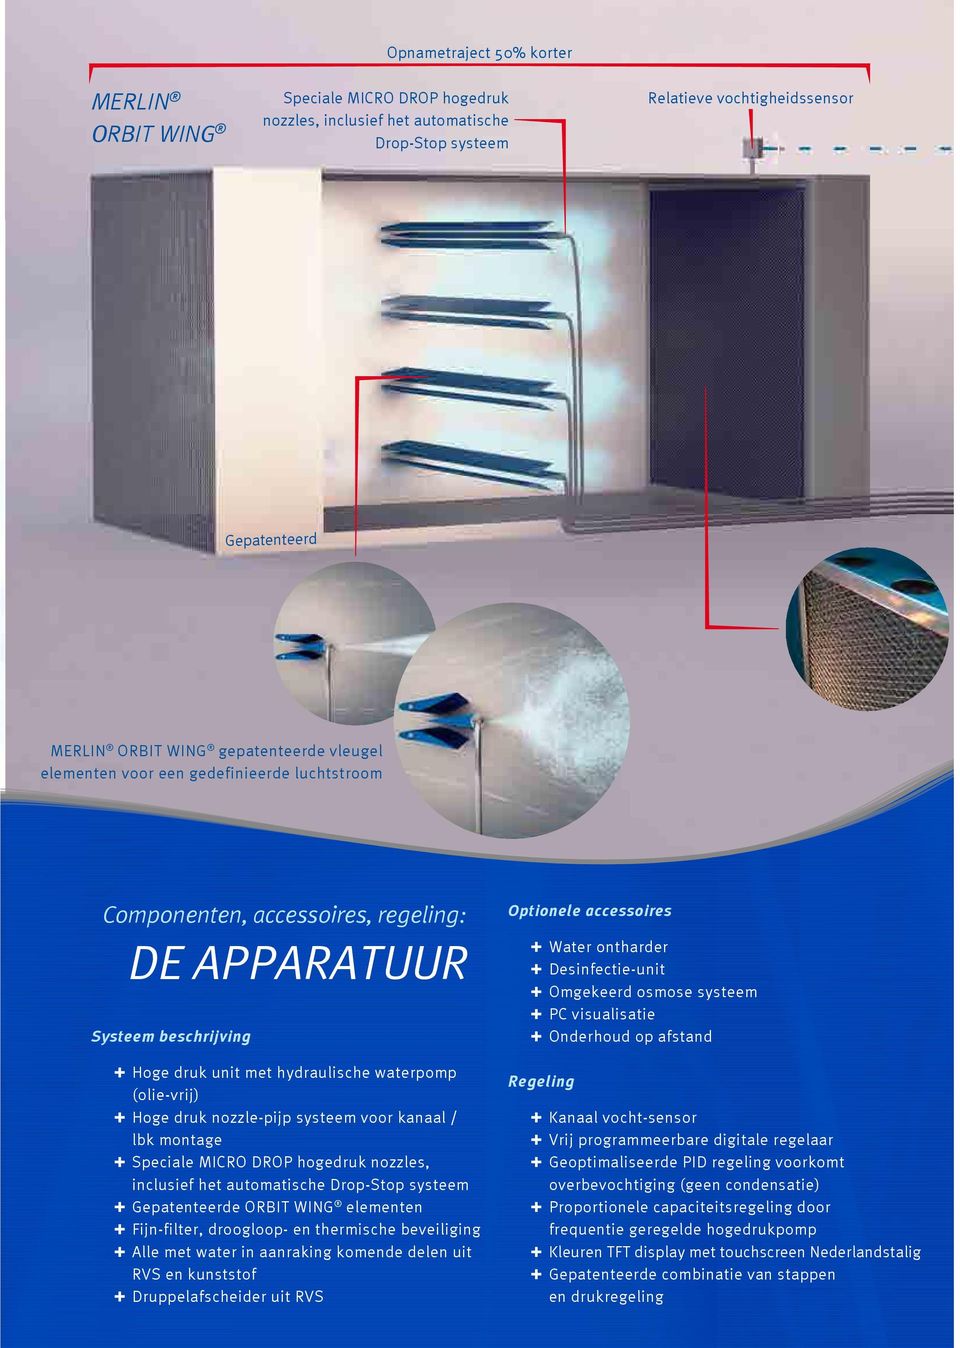 MERLIN ORBIT WING, het MICRO DROP hogedruk luchtssysteem kan in elk ventilatie- en luchtbehandelingssysteem worden geïntegreerd.